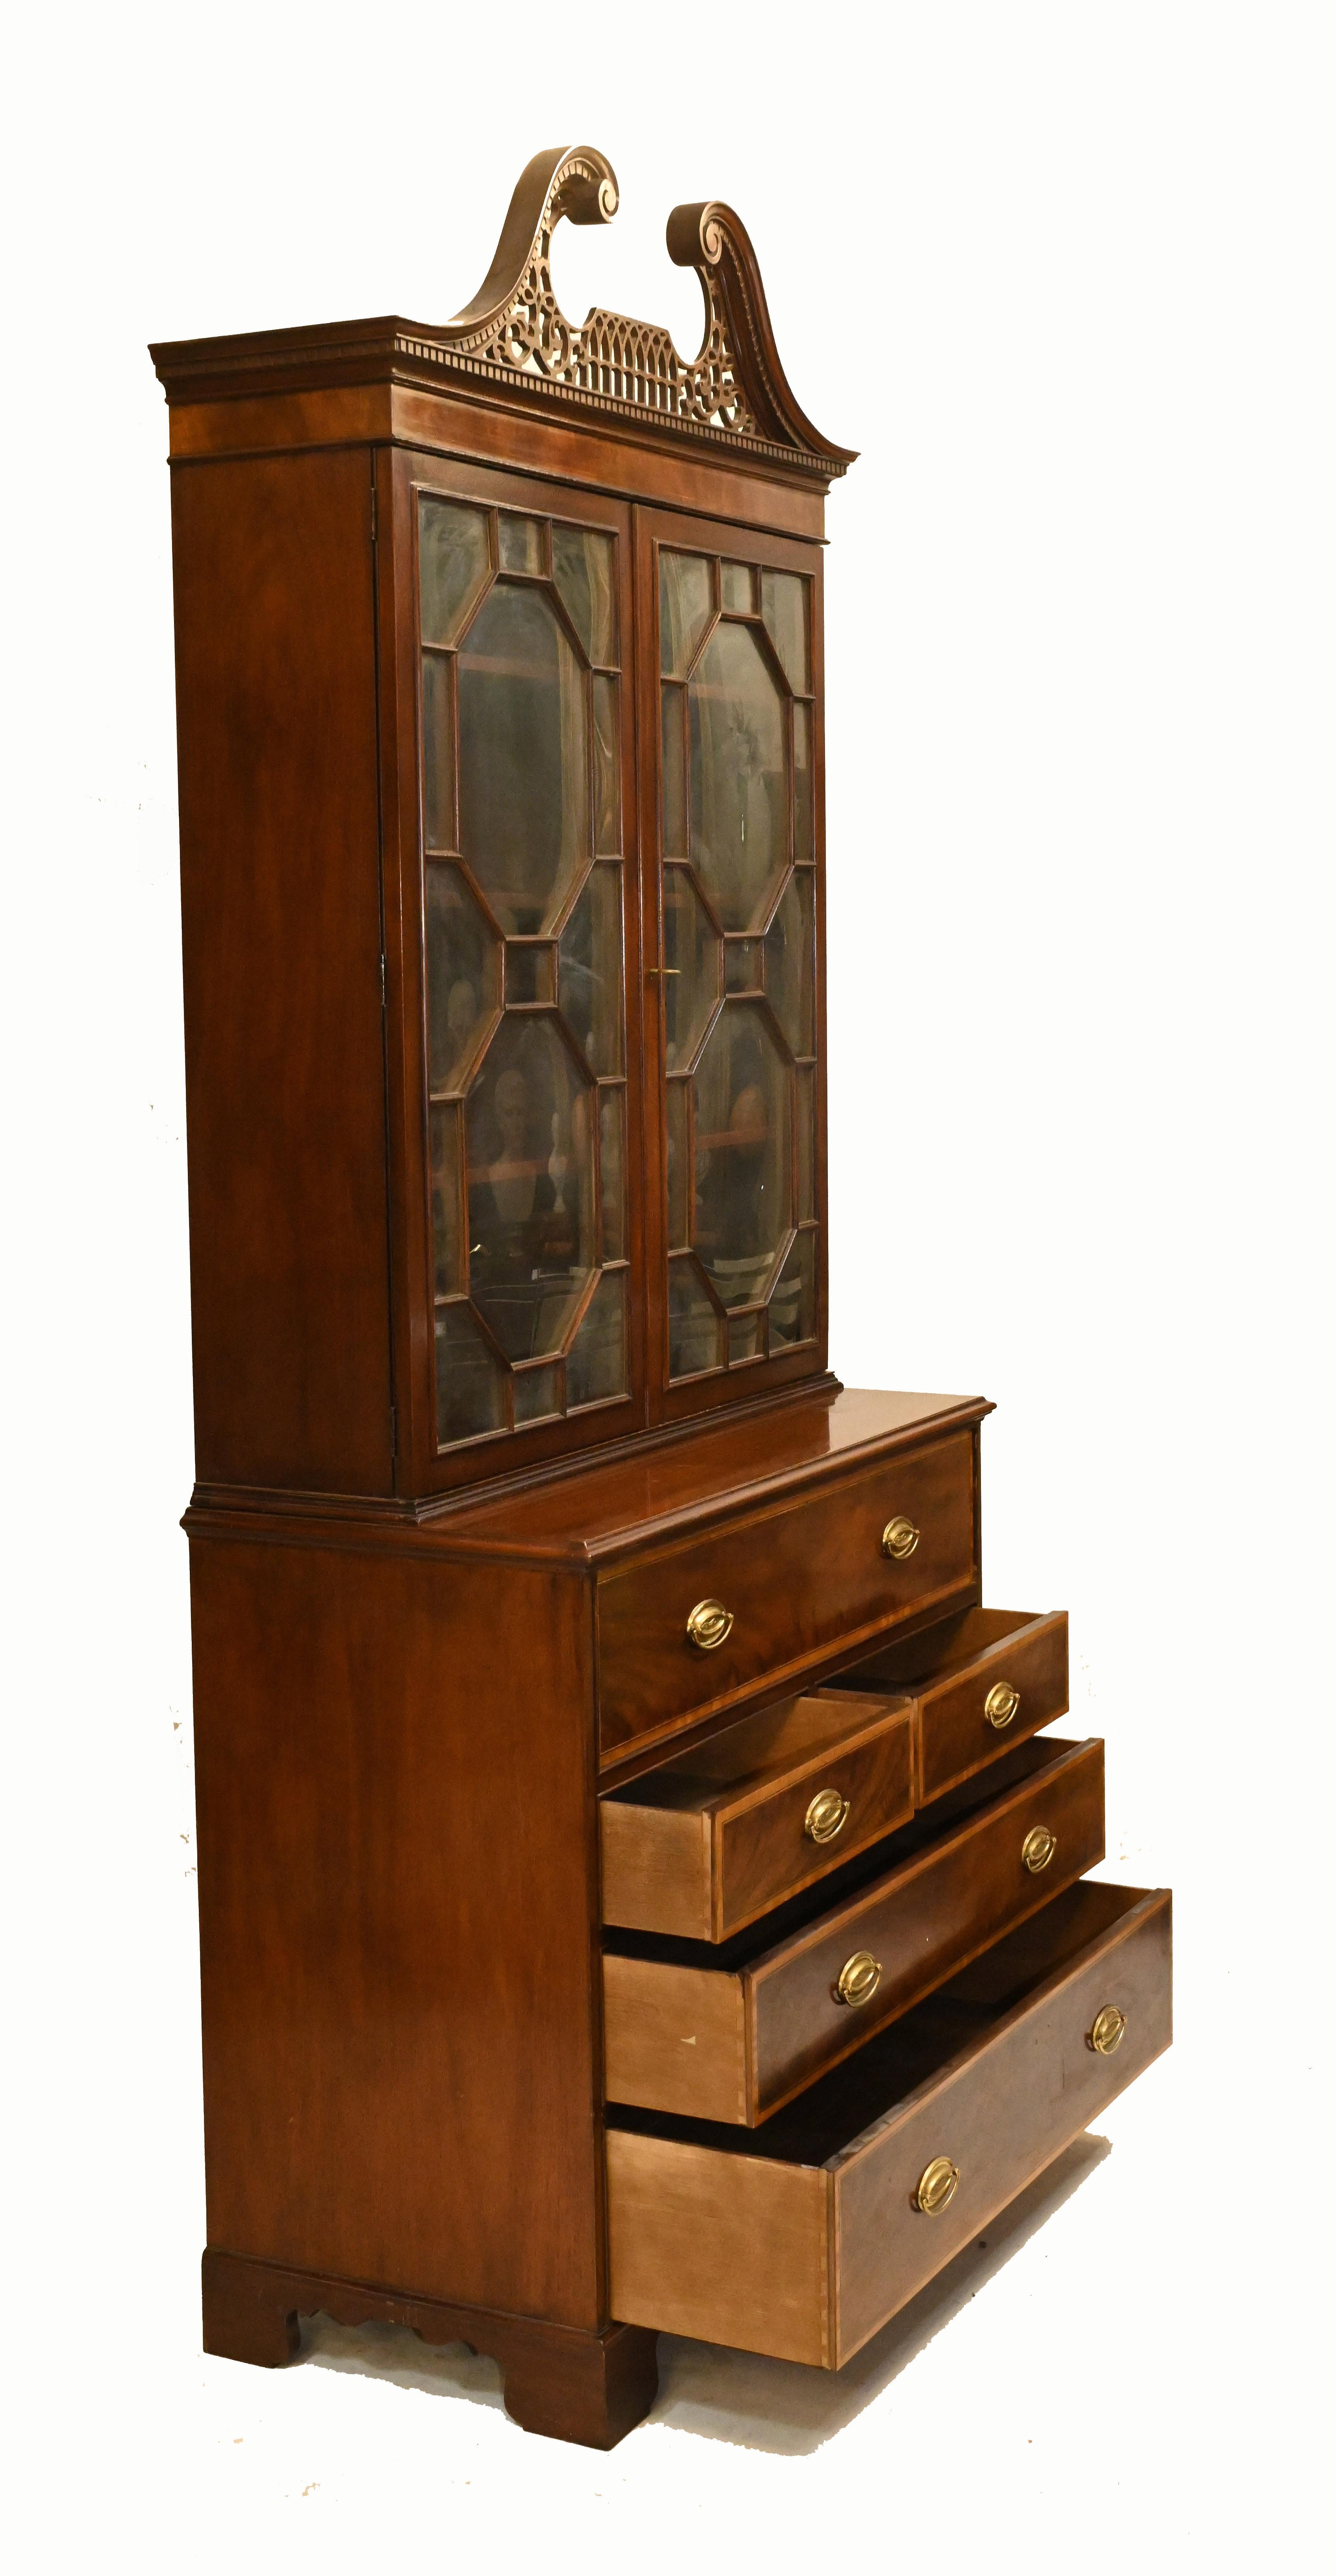 Sheraton Secretaire Bookcase Antique Mahogany Desk, 1910 For Sale 10